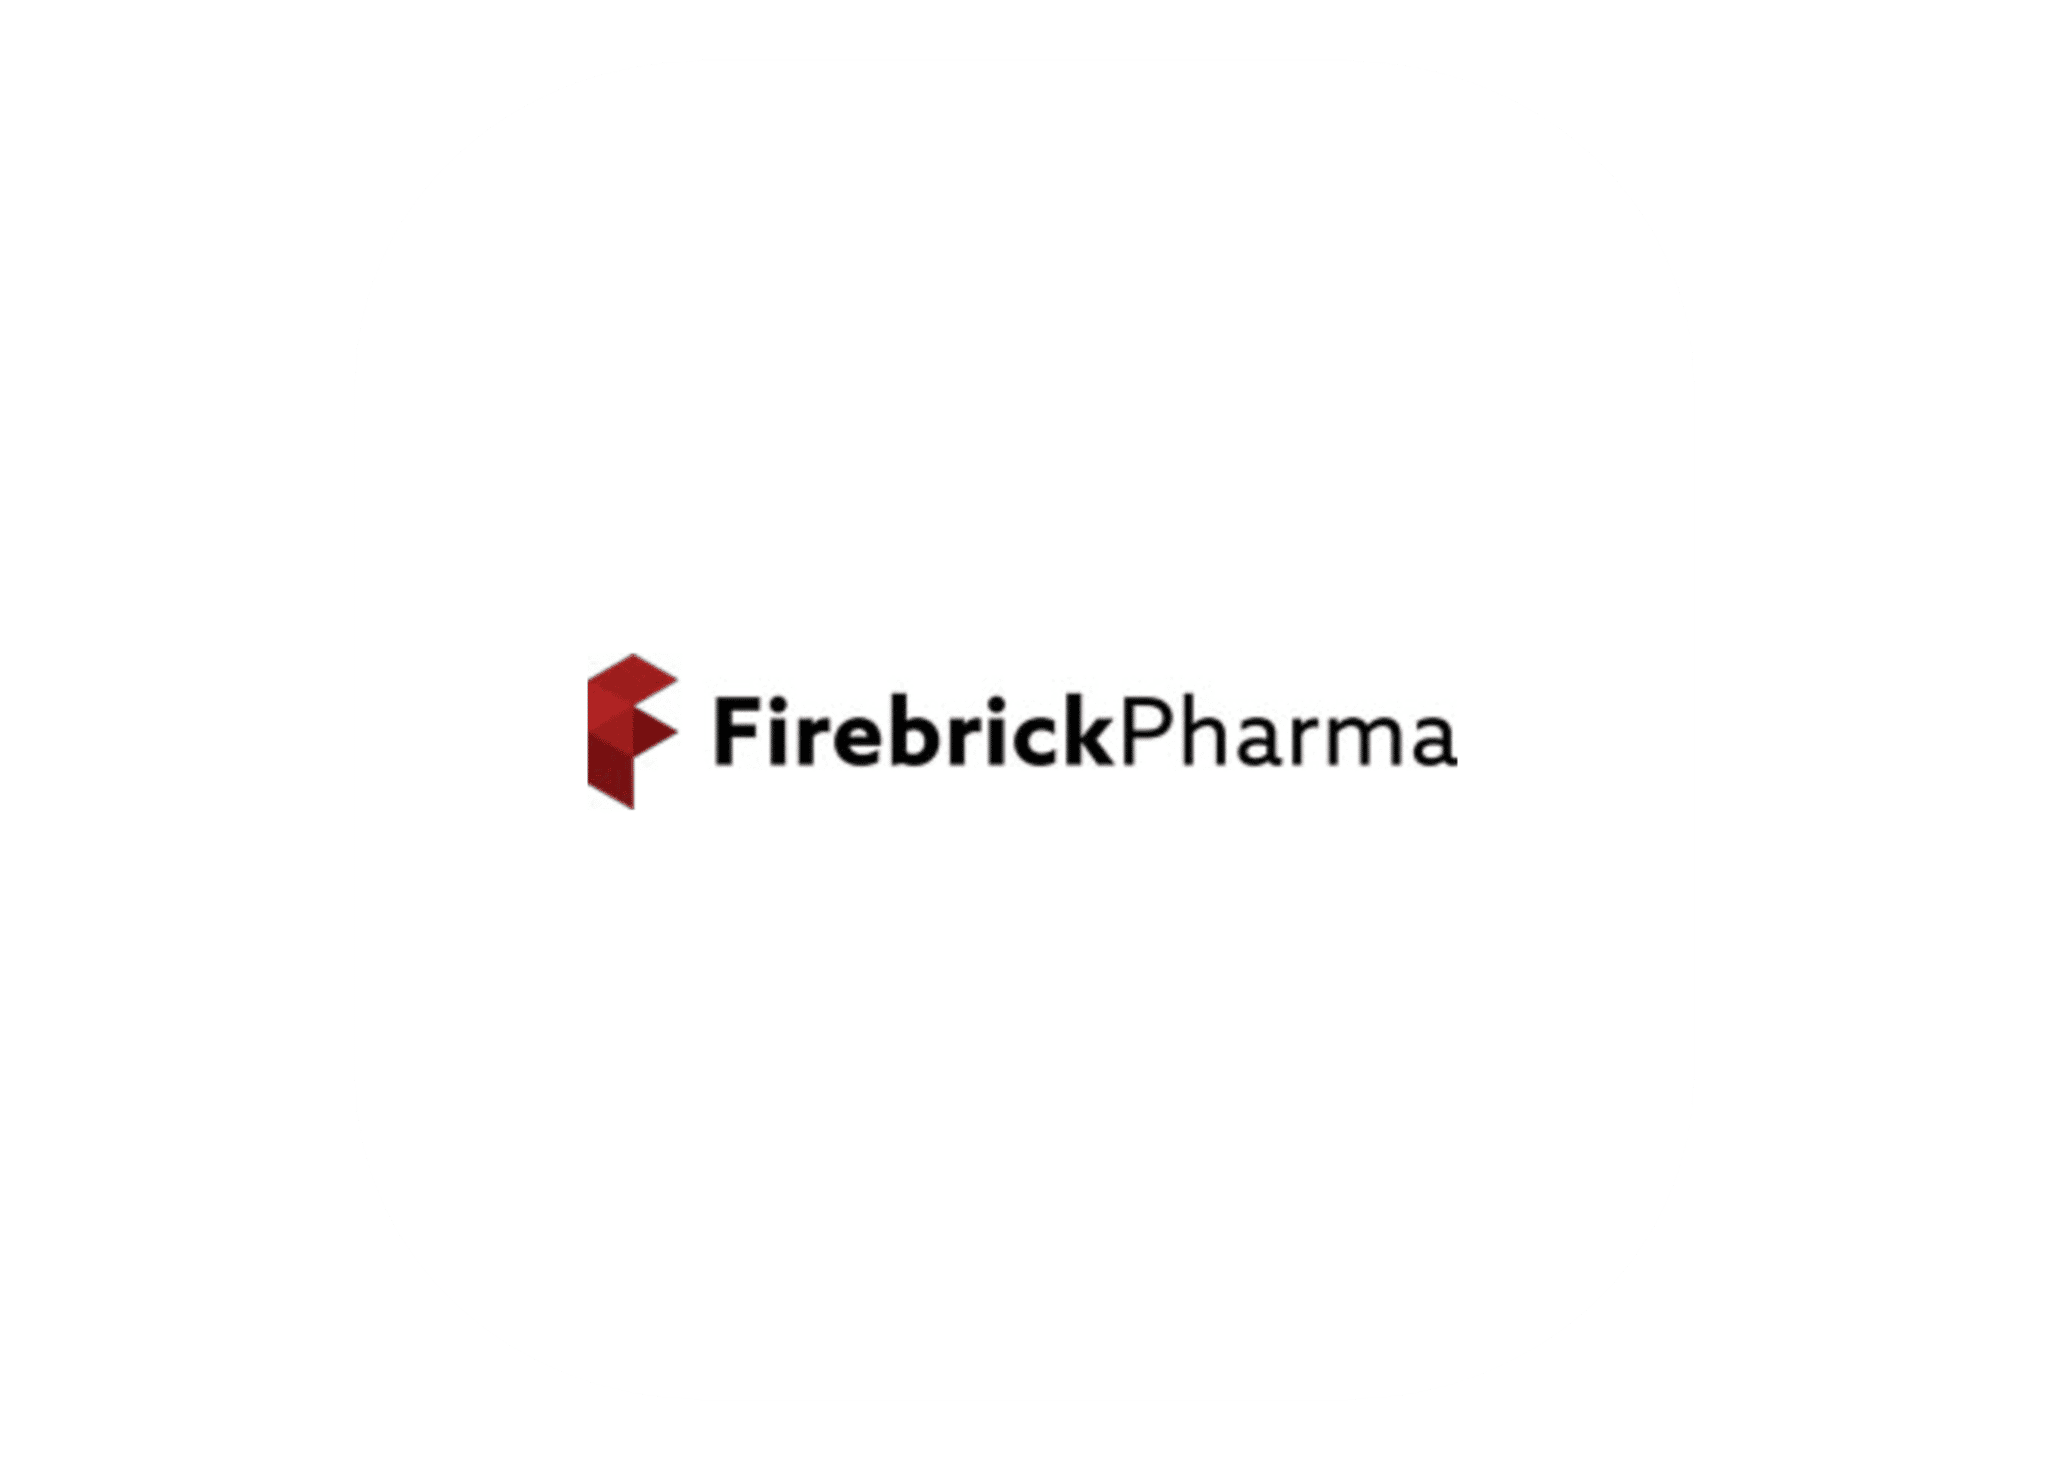 FirebrickPharma